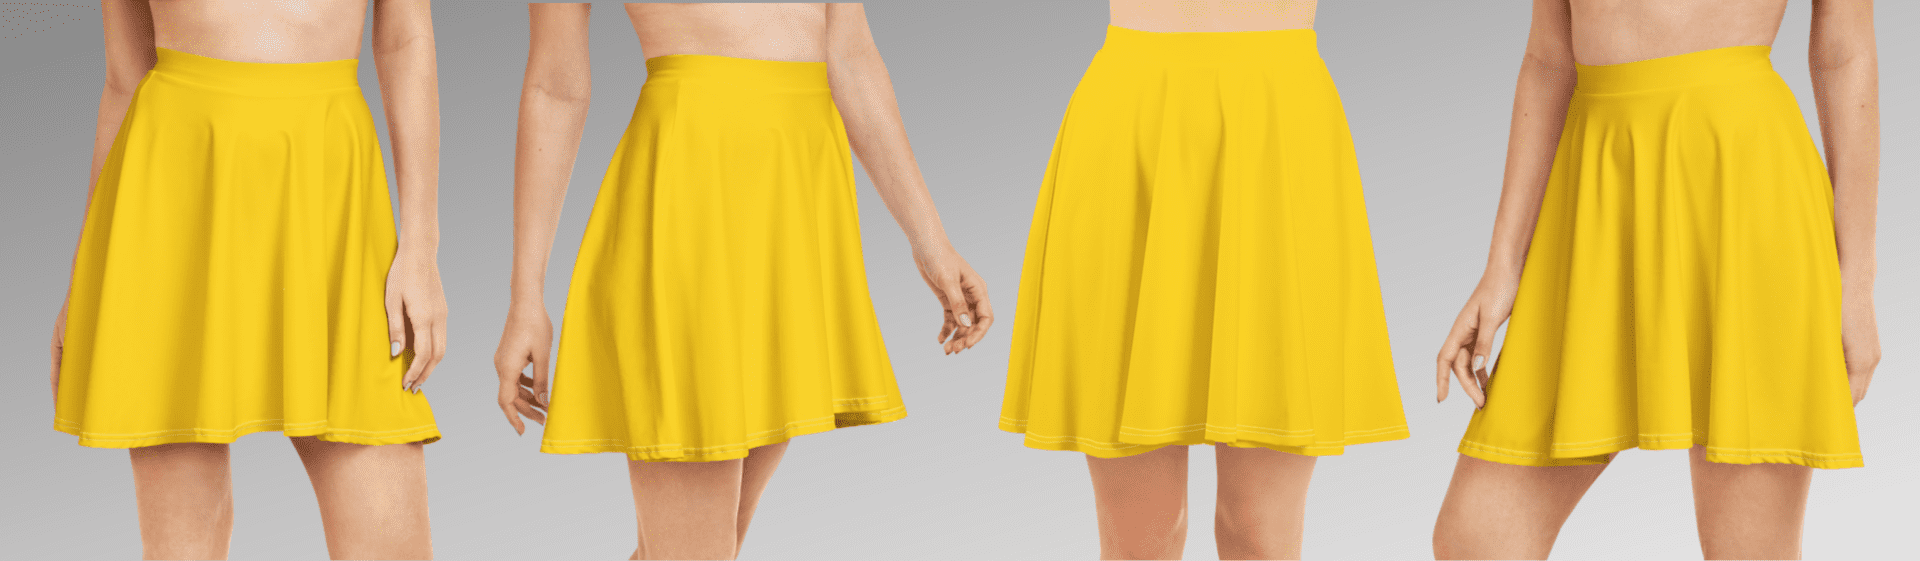 Yellow skater skirt on four models.